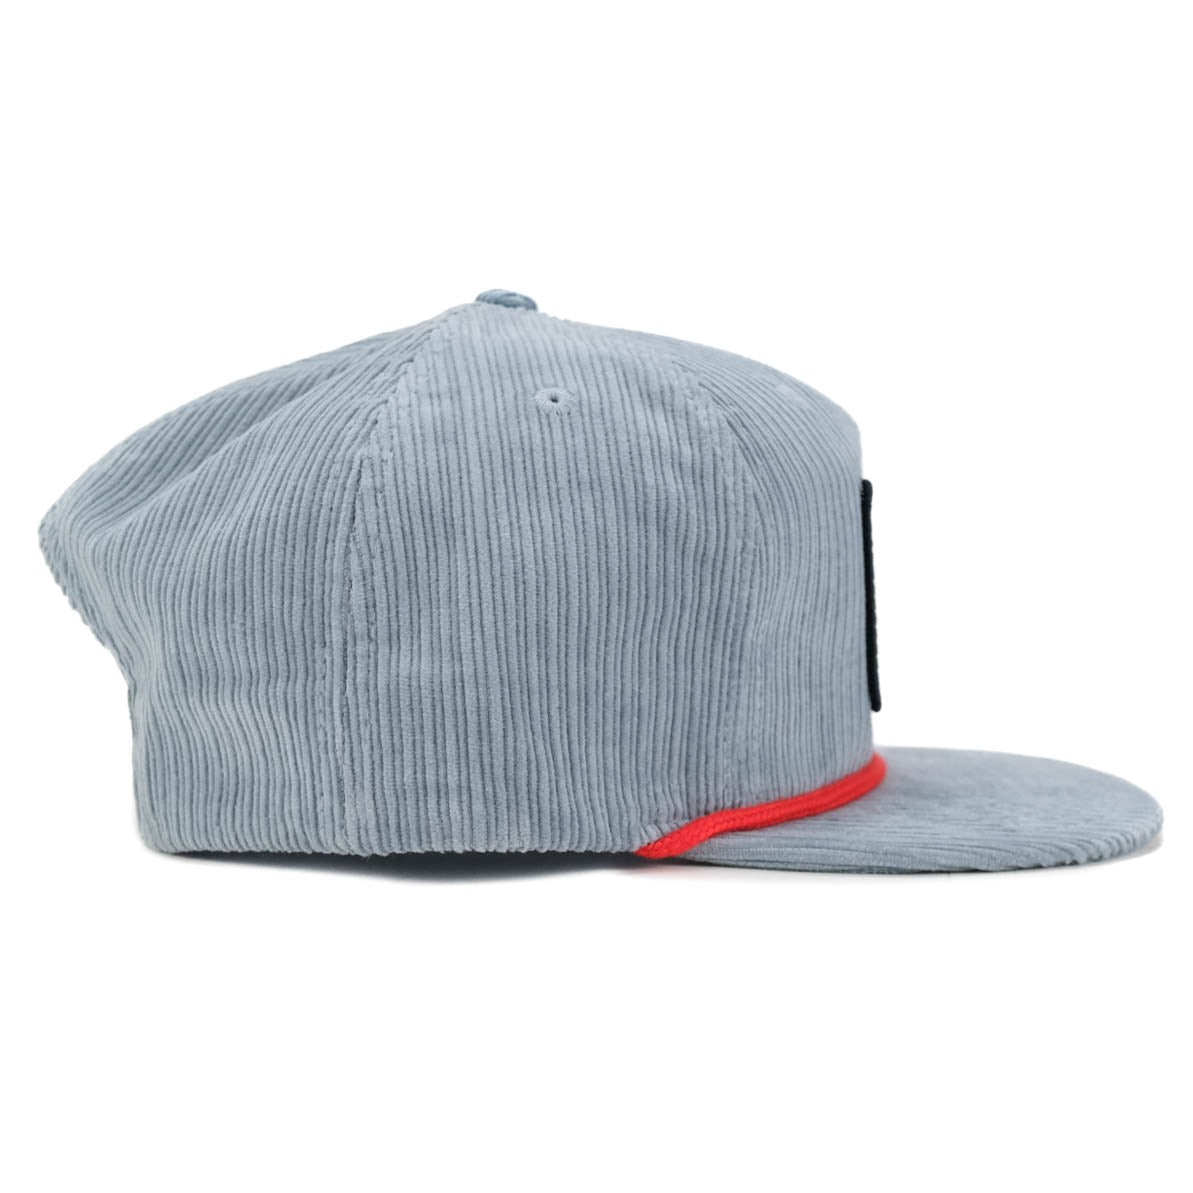 OG Logo Corduroy Patch Hat - Blue Grey / Red